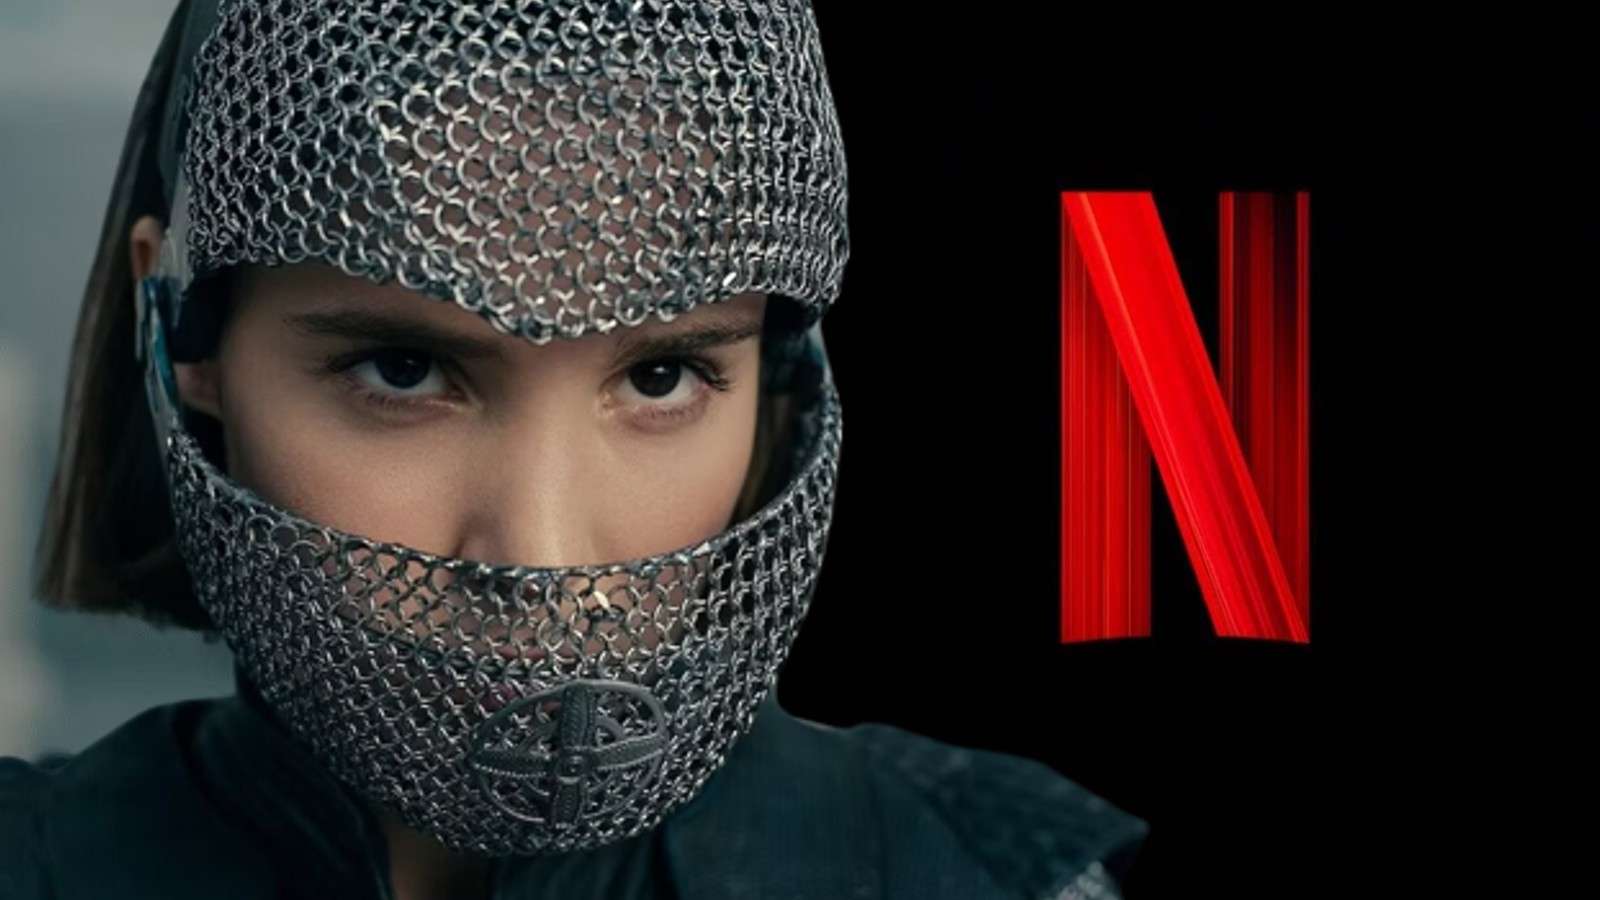 A still from Warrior Nun and the Netflix logo